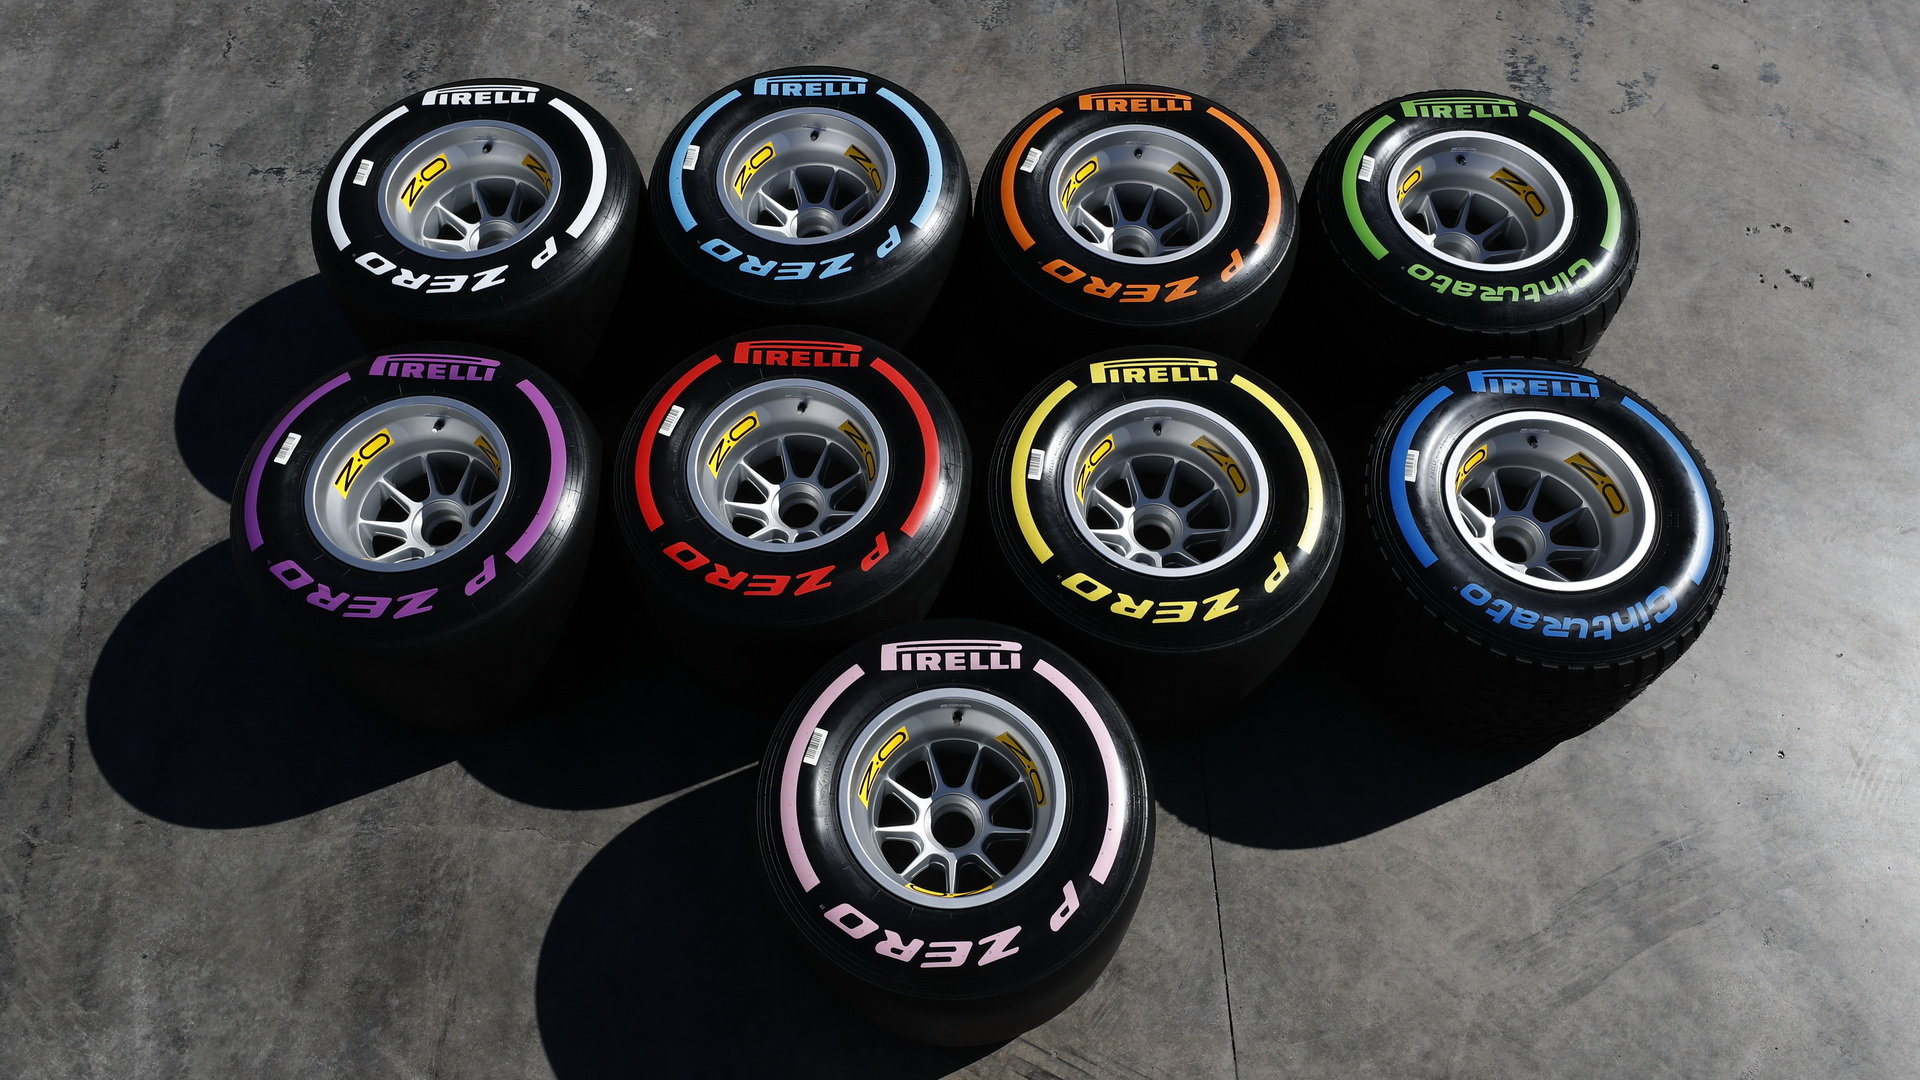 Pirelli letos přidalo hyper-měkkou směs - časy v kvalifikacích šly dole, v závodech ale piloti místo zastávky raději zvolní a pneumatiky šetří